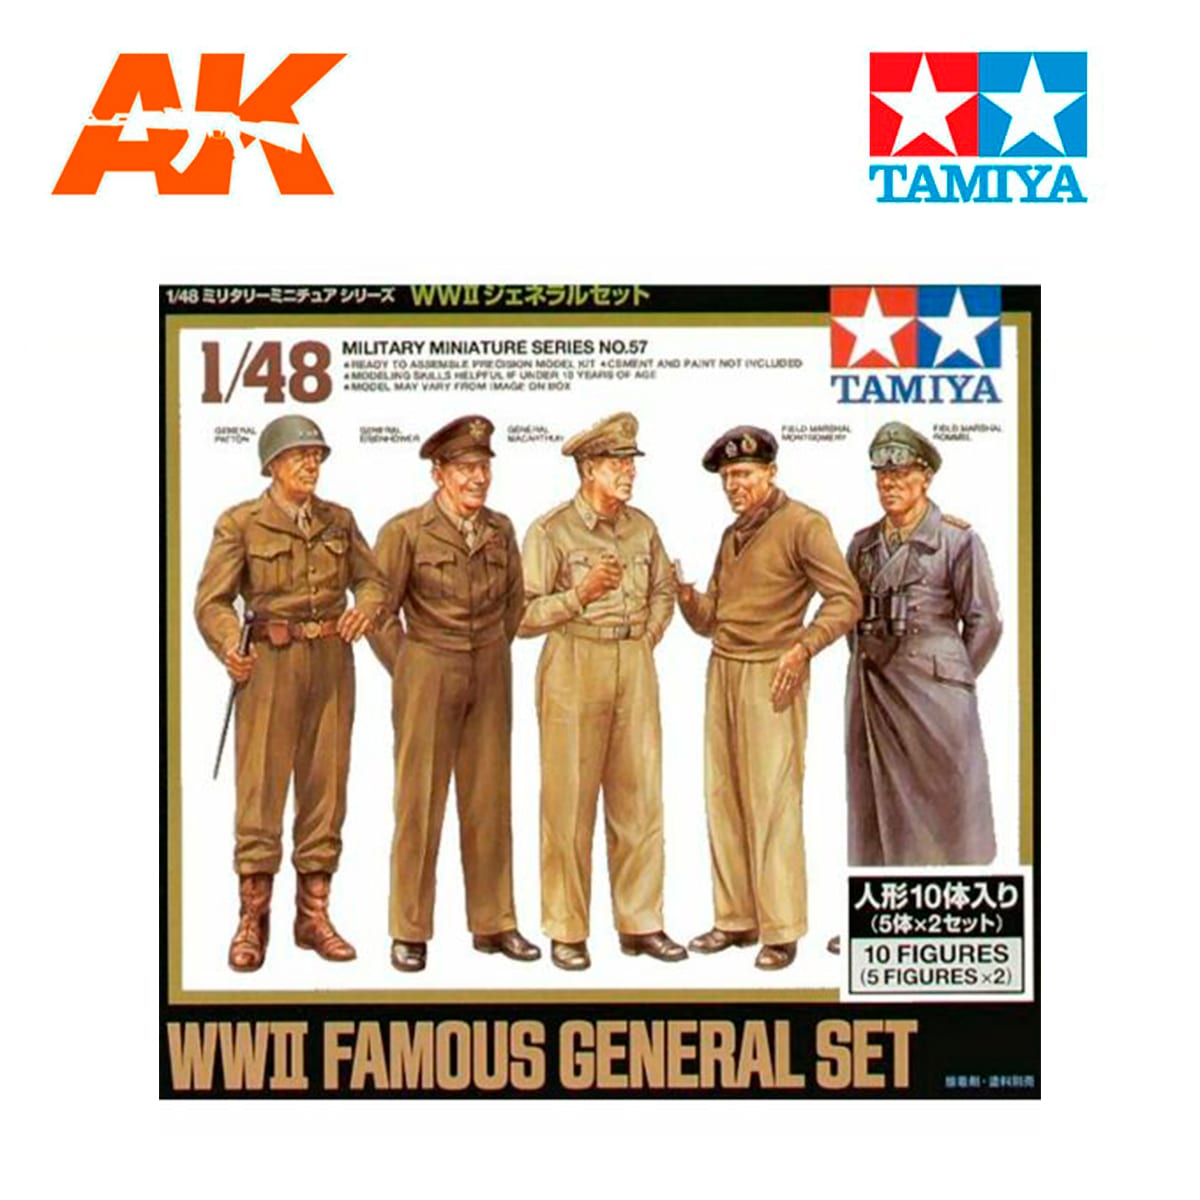 1/48 Famous General set